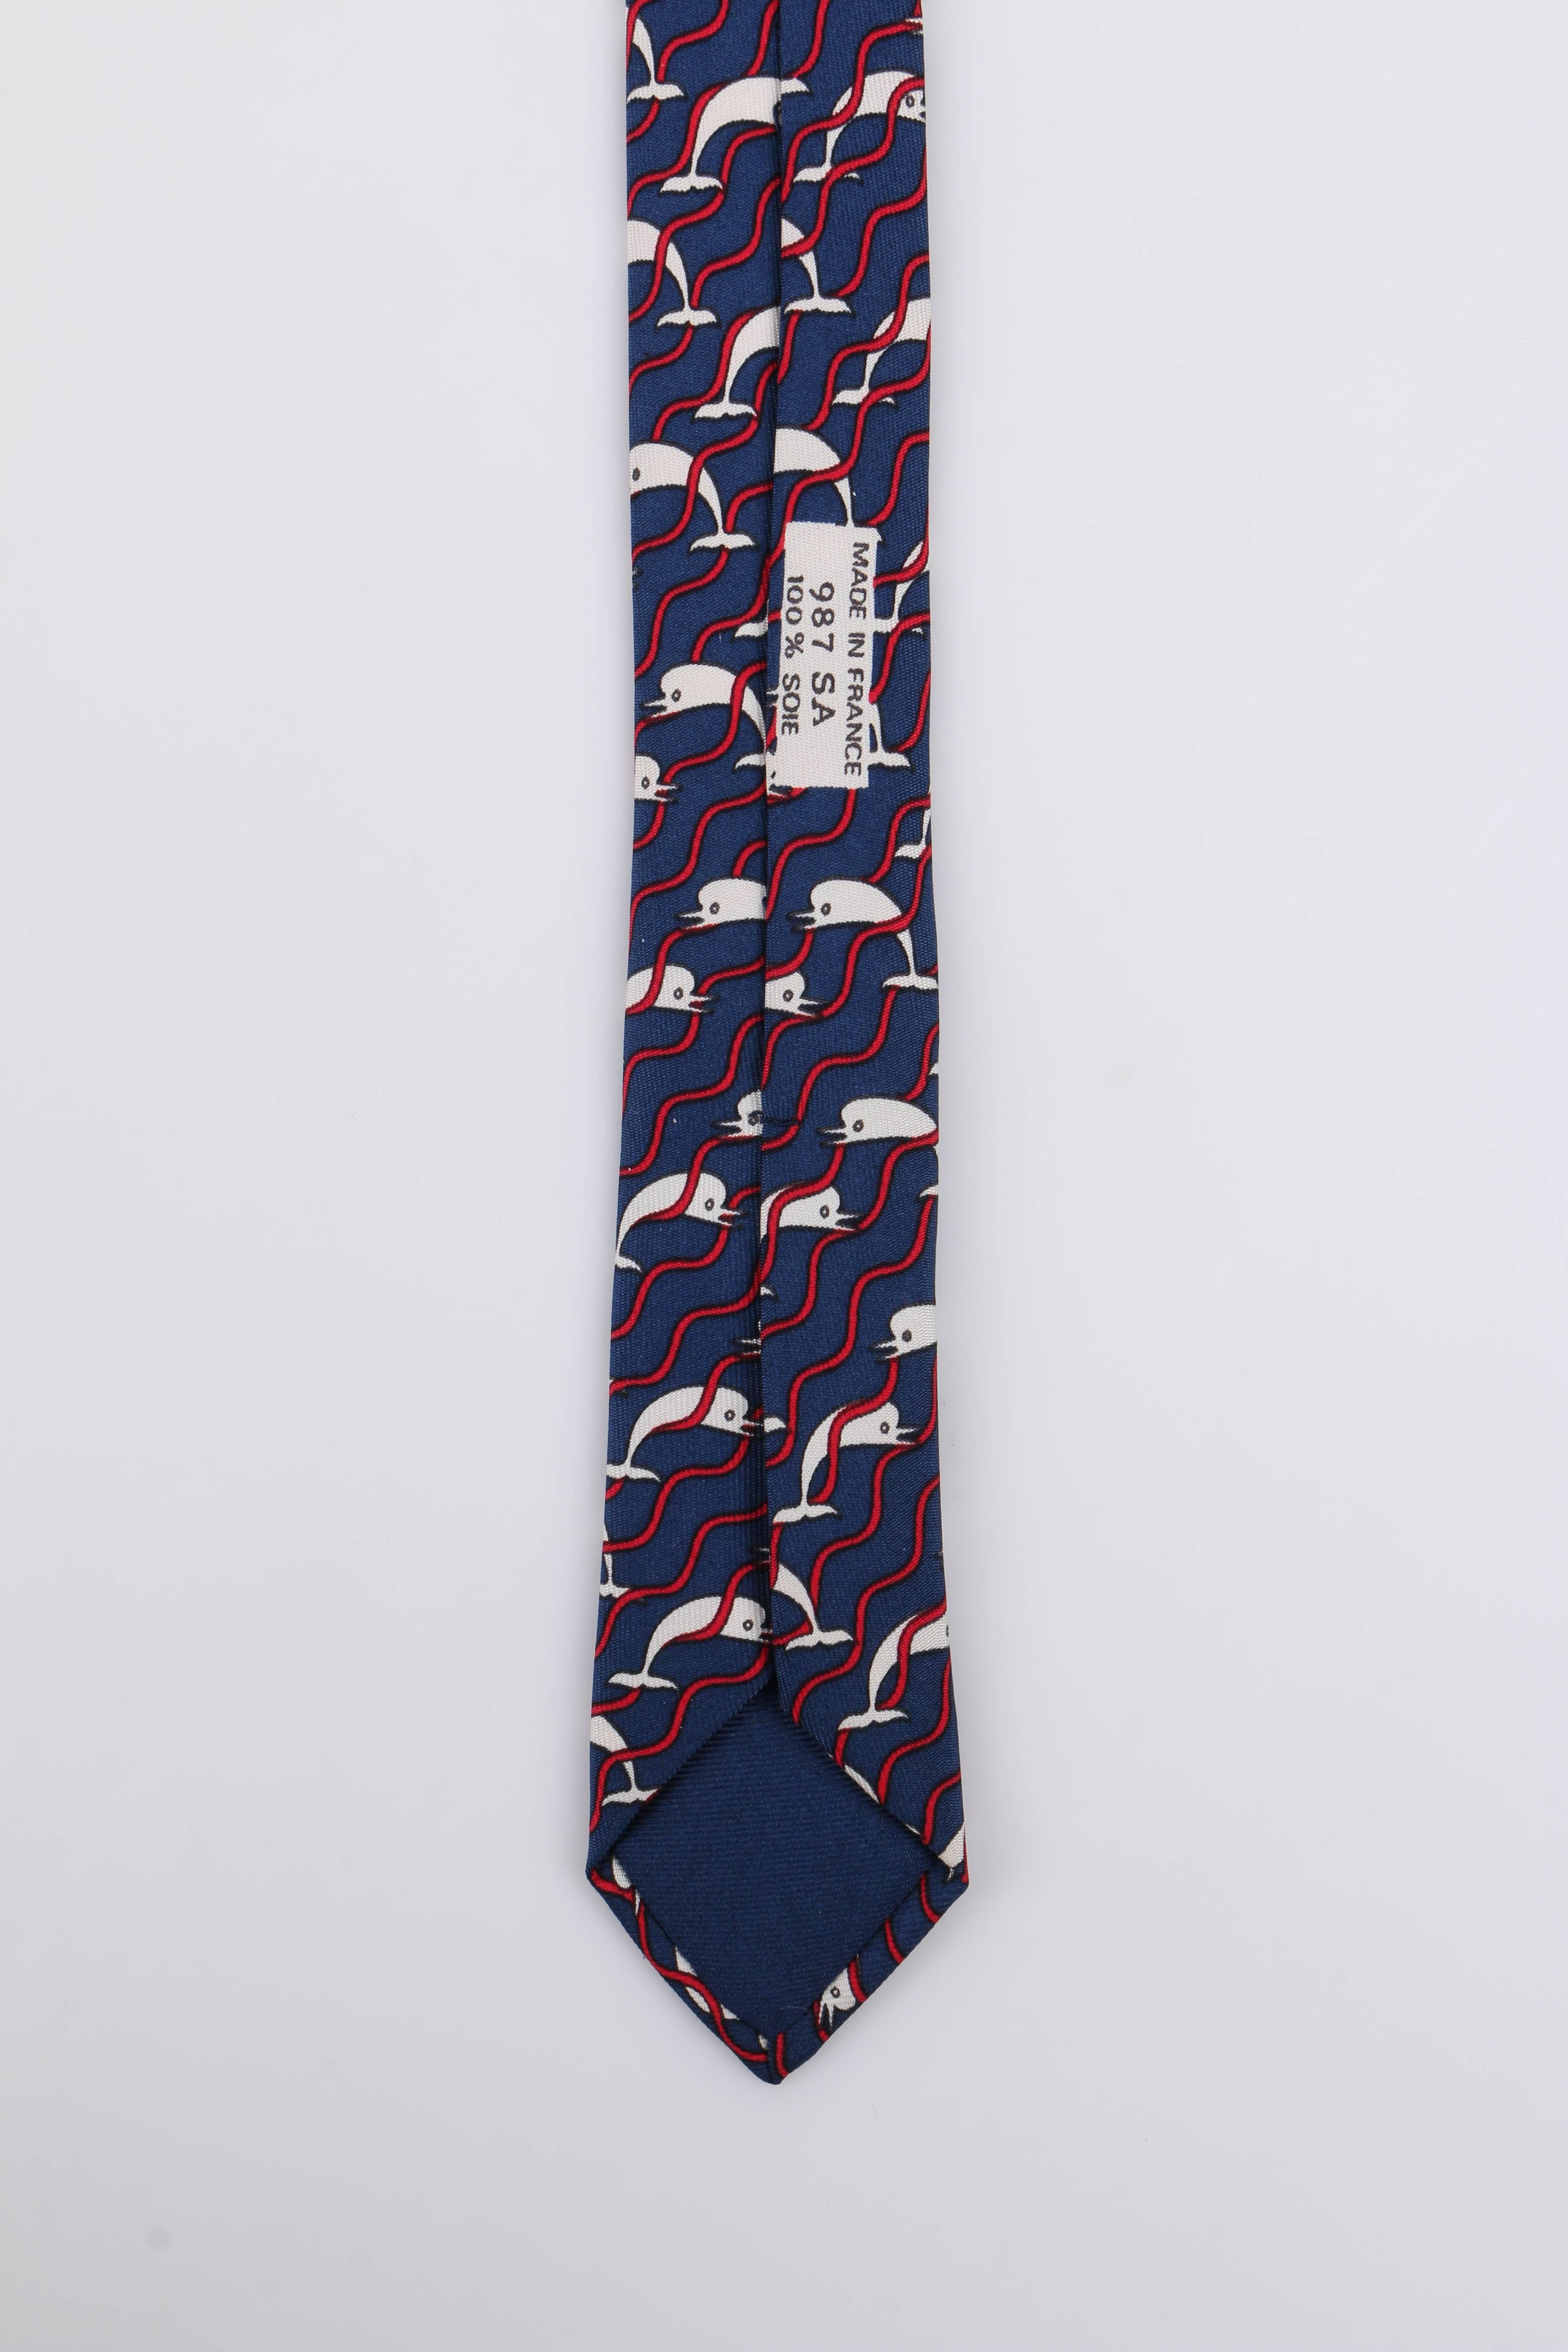 HERMES 5 Fold Navy Blue Dolphin Wave Stripe Print Silk Necktie Tie 987 SA 2